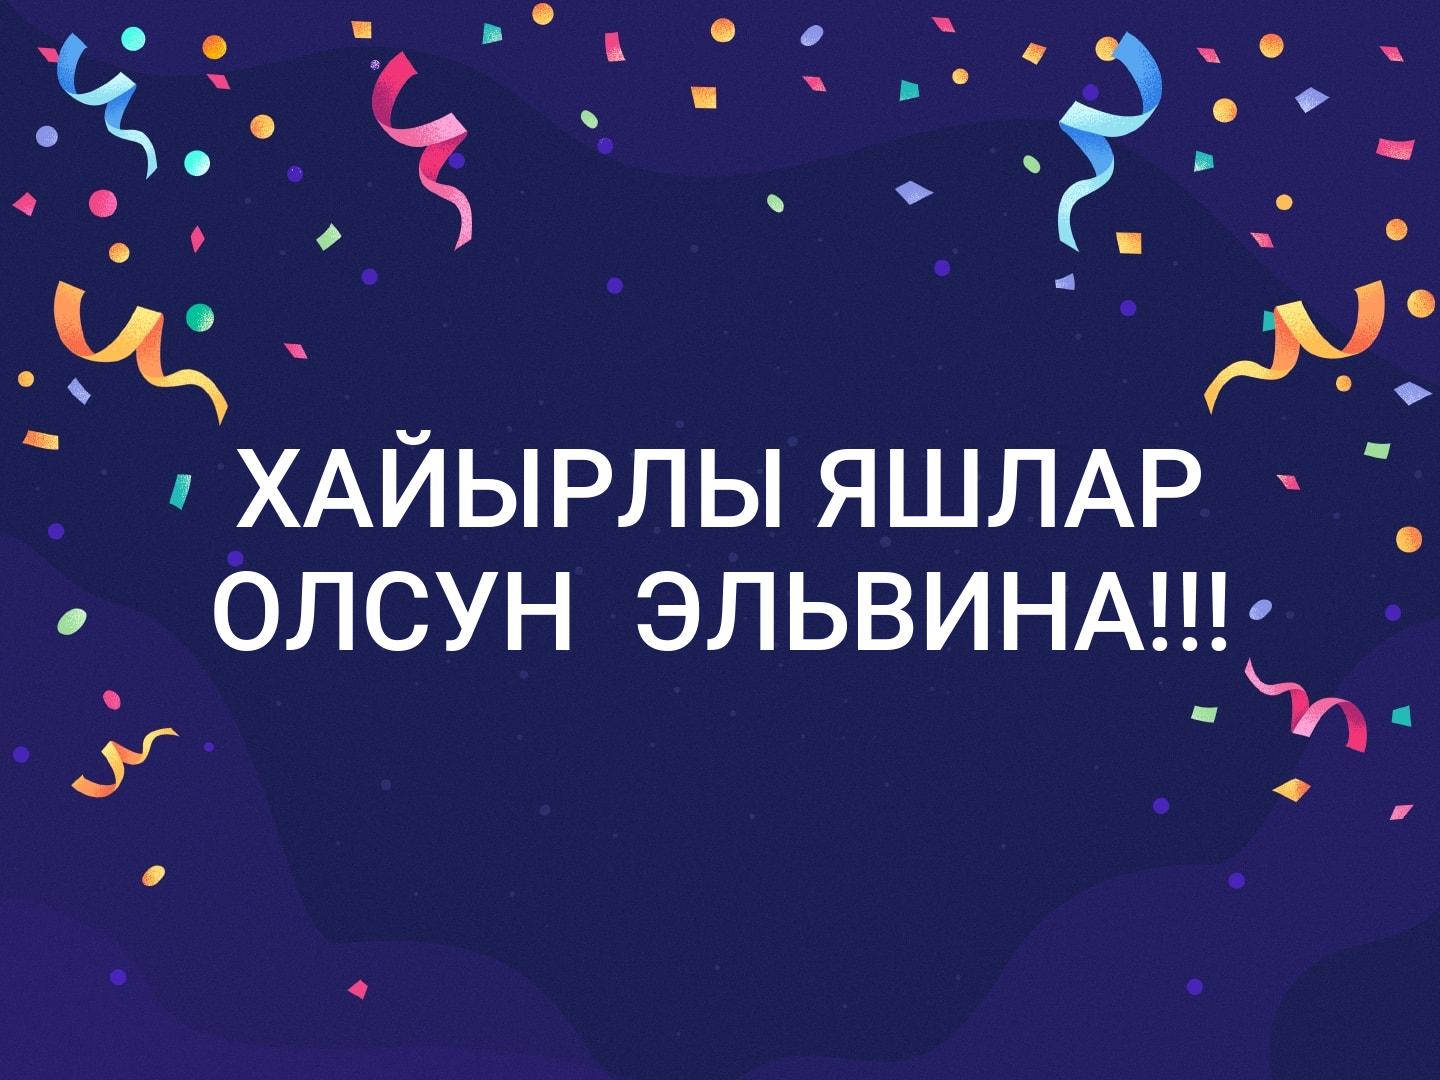 Поздравление с рождением на крымскотатарском языке. Хайырлы яшлар олсун поздравления. Поздравления с днём рождения на крымскотатарском языке. Открытки с днём рождения на крымскотатарском языке. Пожелания на крымскотатарском языке с днем рождения.